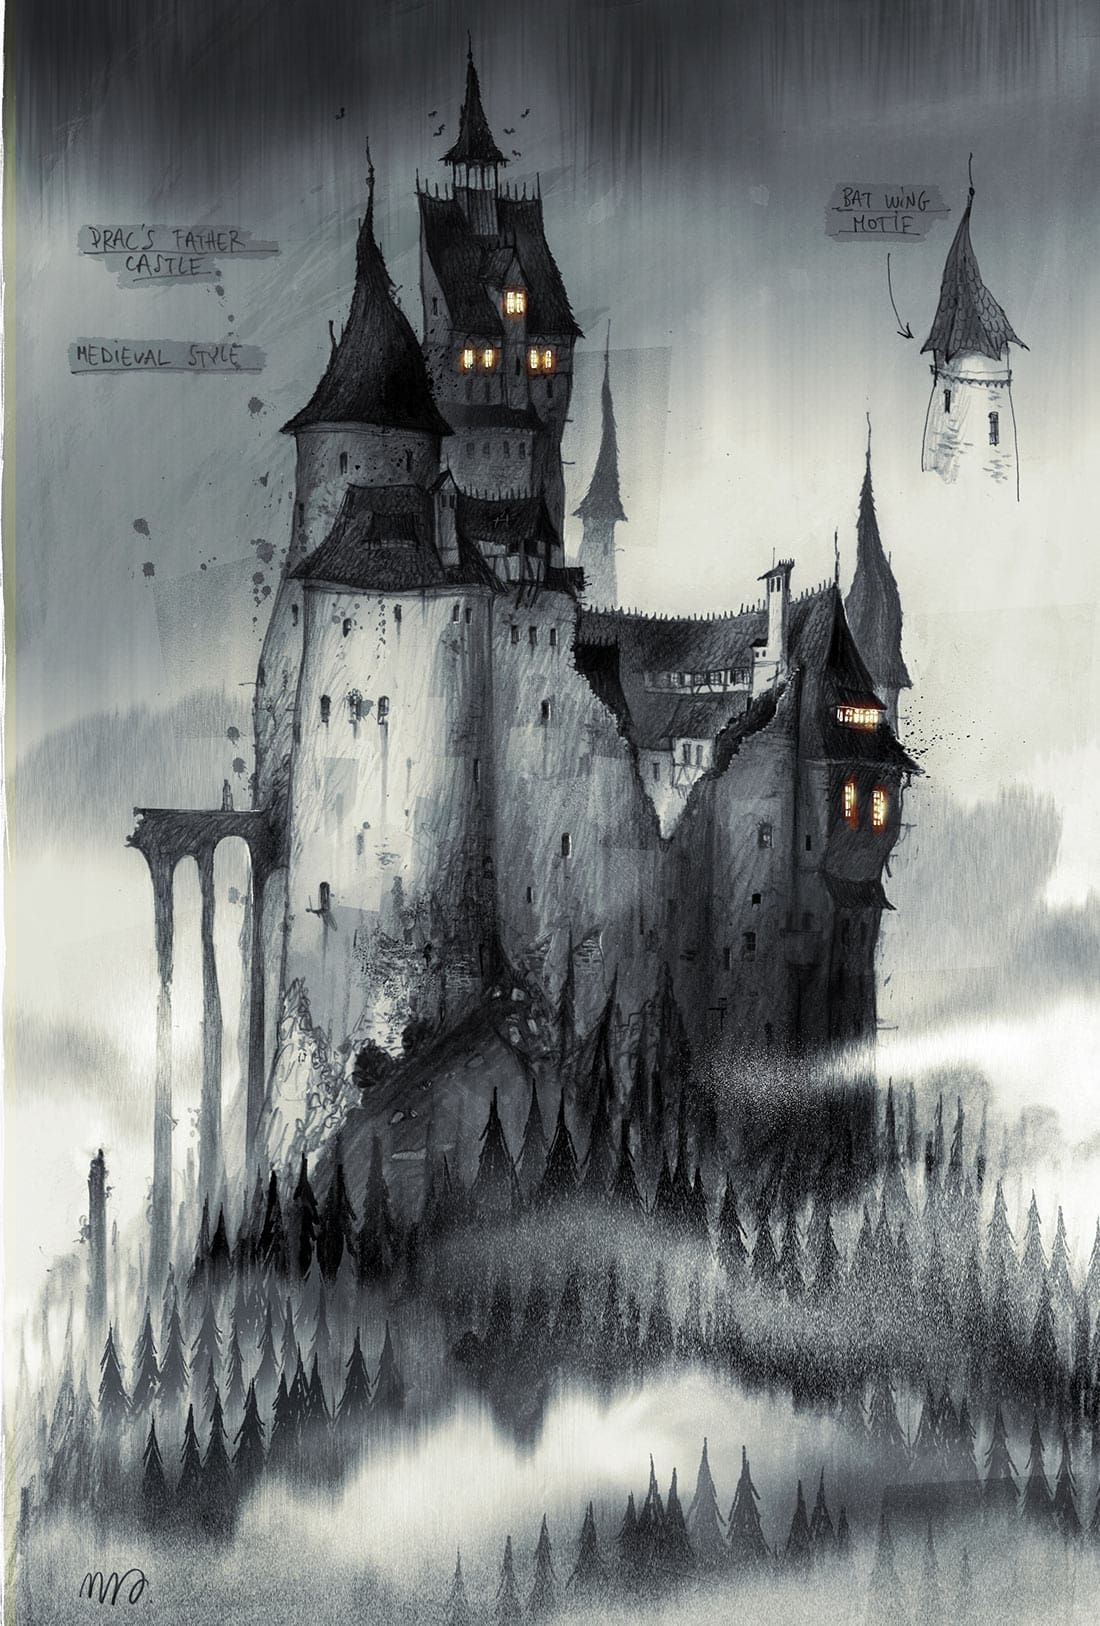 Vlad castle concept by Sylvain Marc.